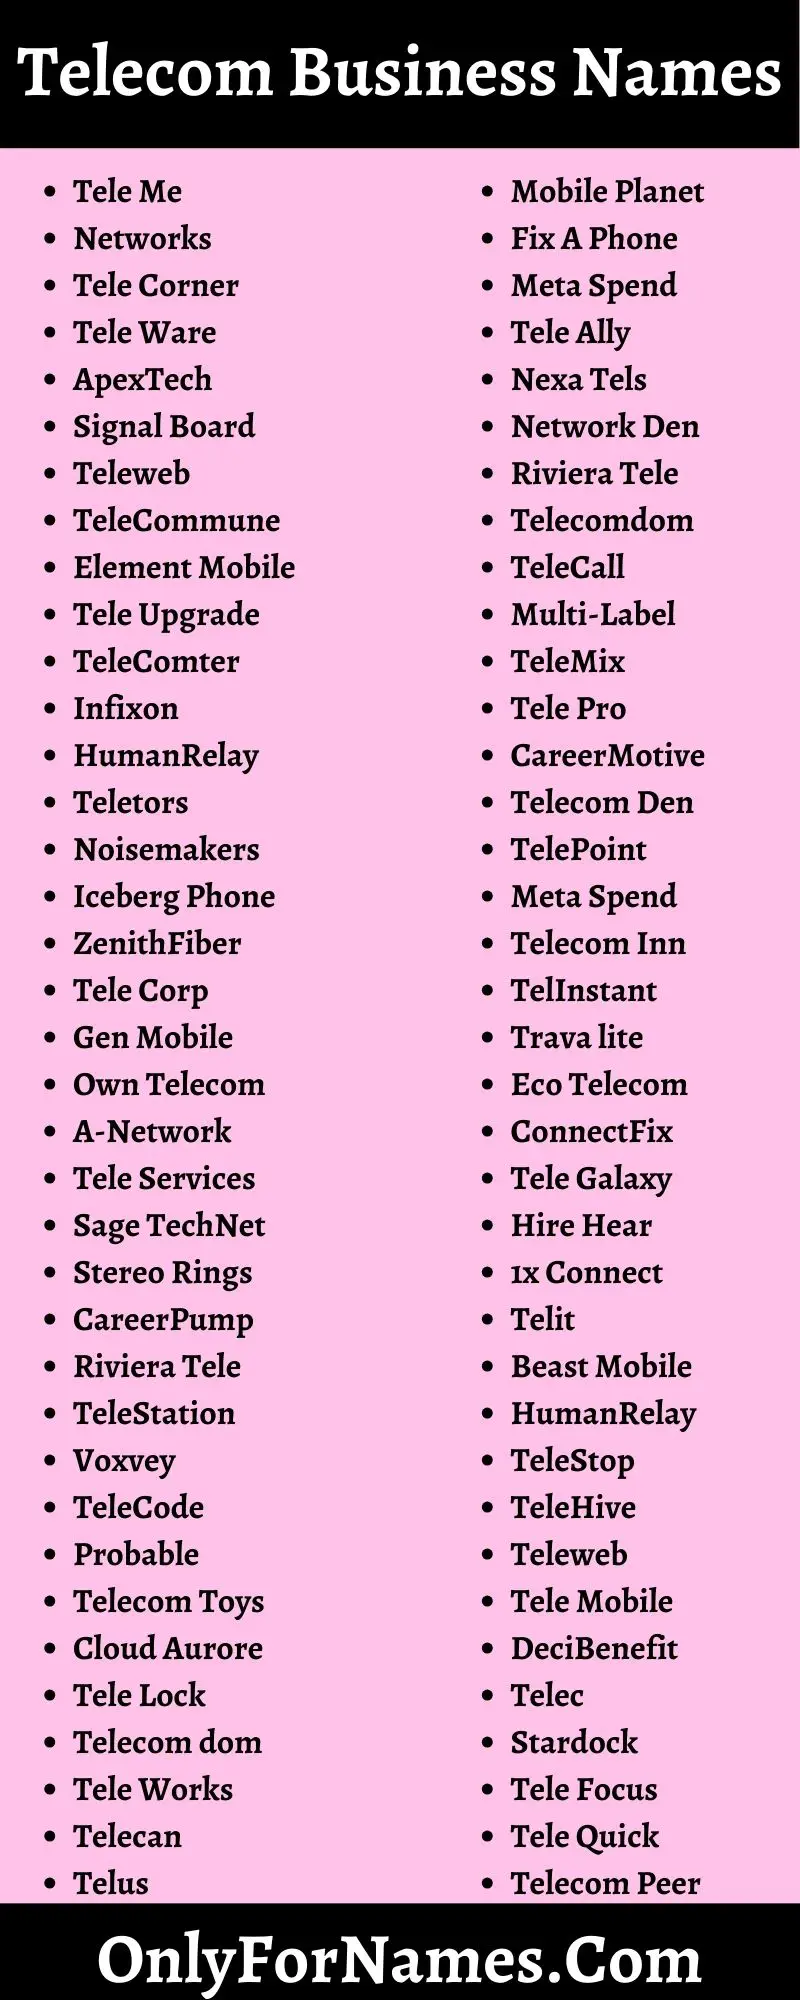 Telecom Business Names